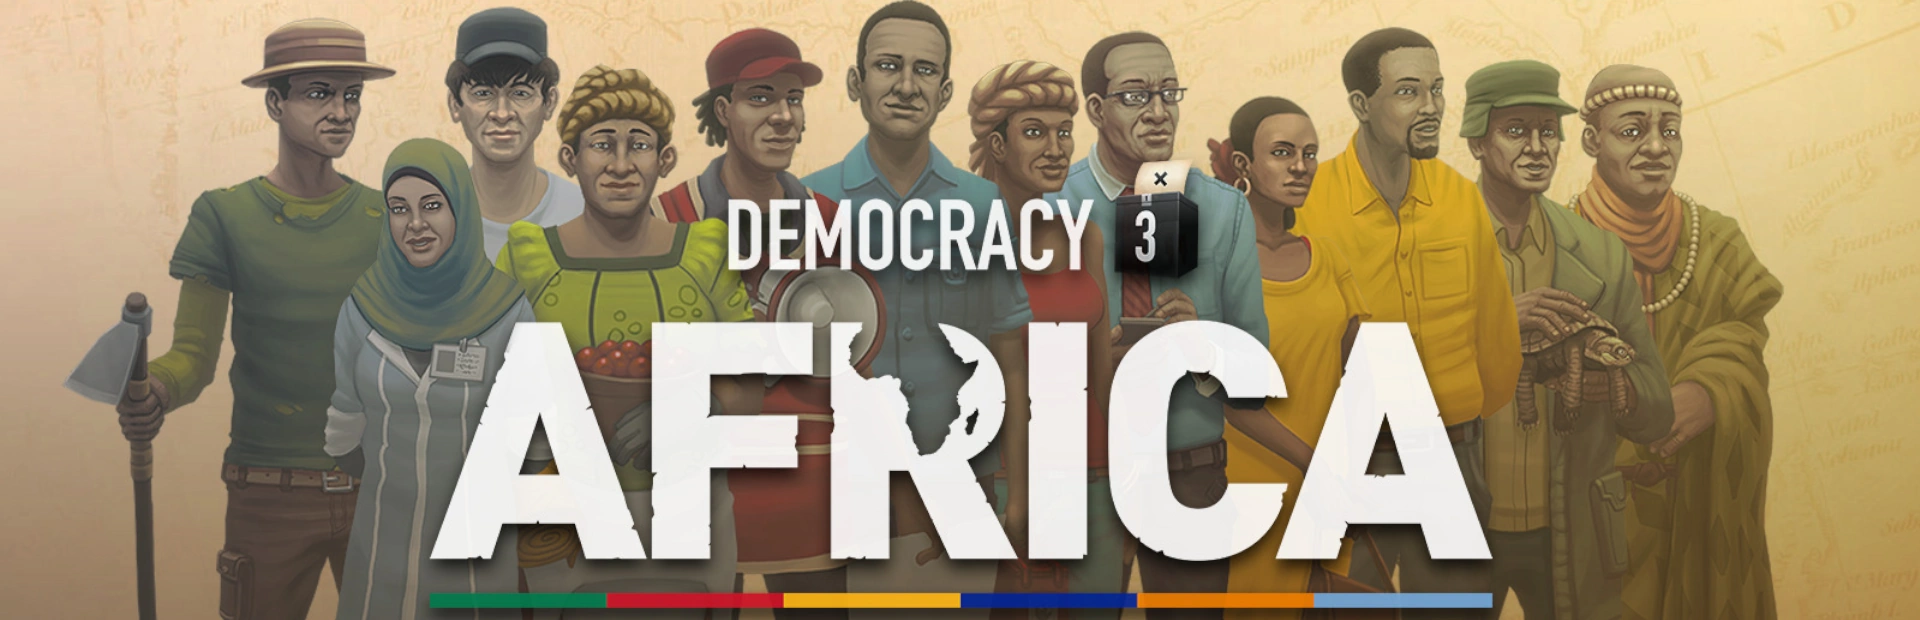 دانلود بازی Democracy 3 Africa برای کامپیوتر | گیمباتو